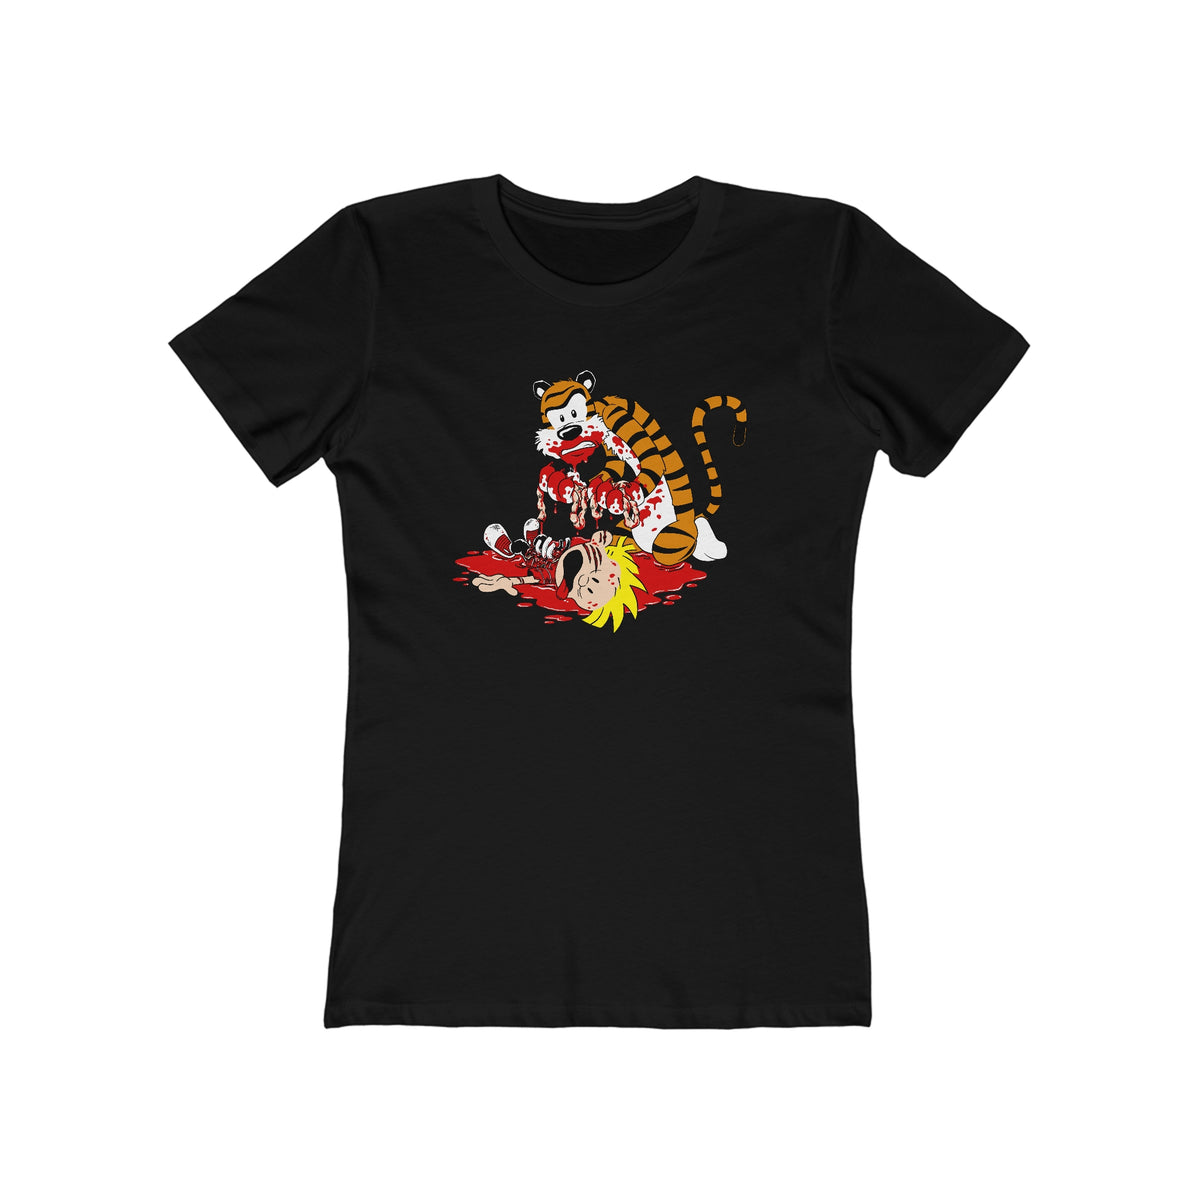 Hobbes' Revenge  - Women’s T-Shirt